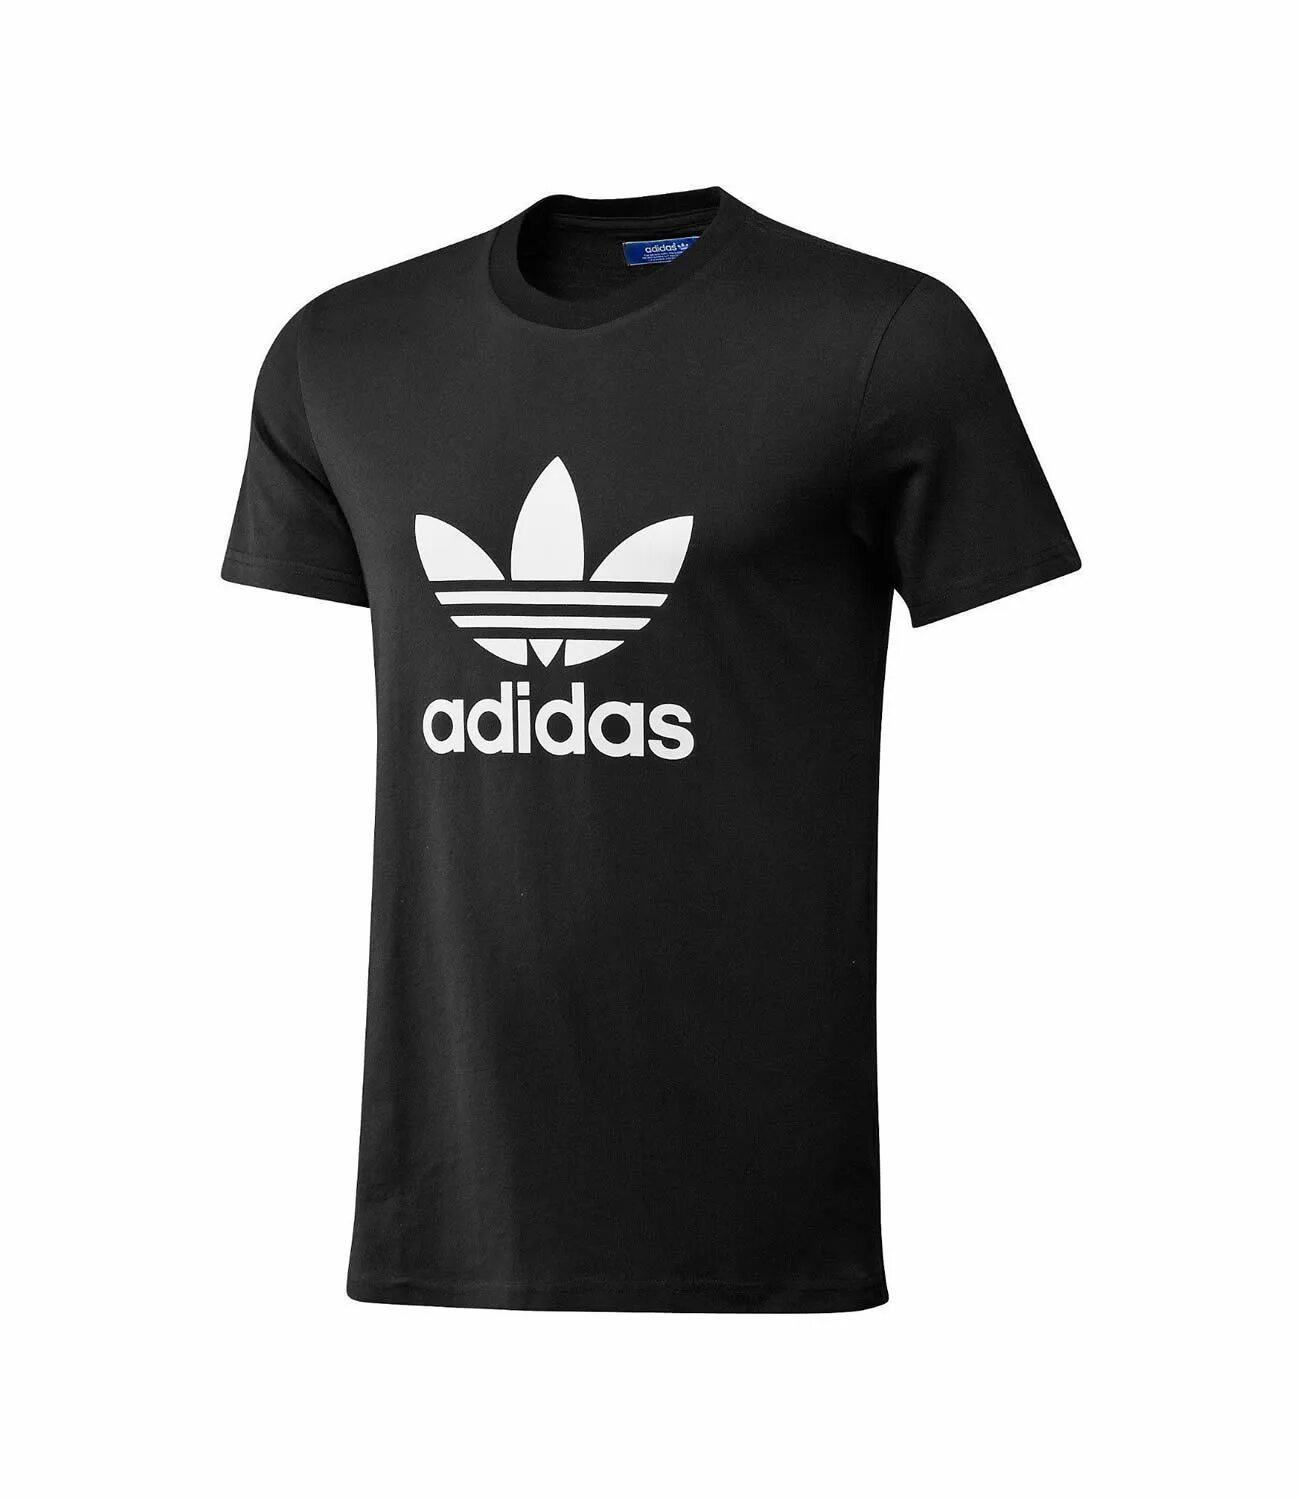 Адидас рядом. Adidas Printshop. T-Shirt adidas Black. Адидас т ширт. Adidas t Shirt New collection.